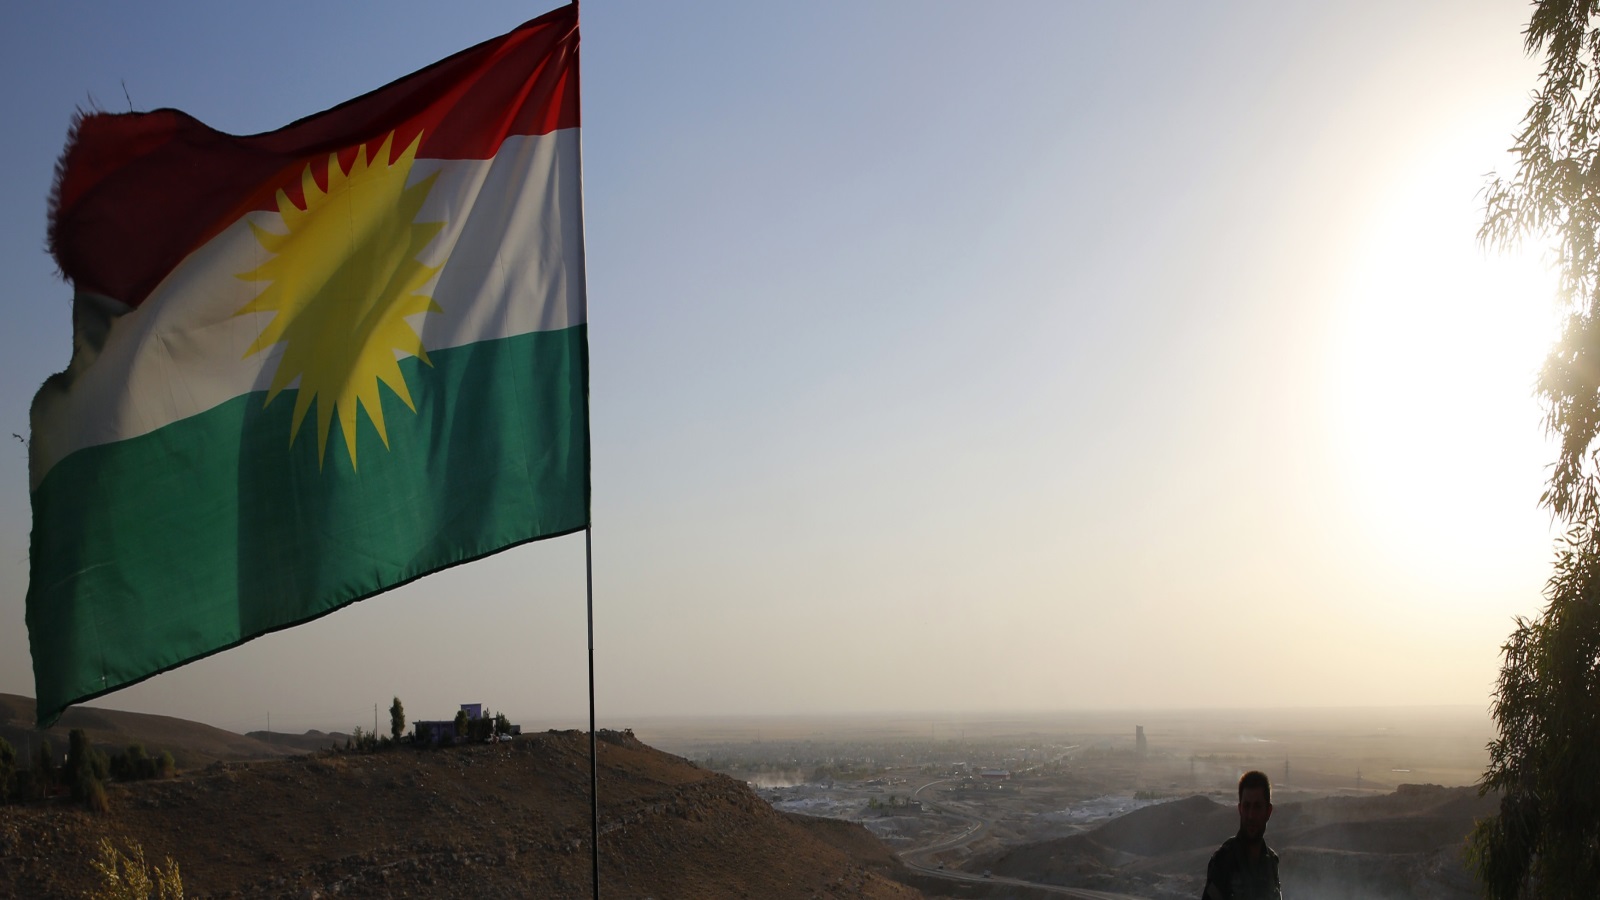 رغبة الأكراد في شمال العراق لإنشاء بلد خاص بهم لم تلق ترحيبا، وعبرت بغداد عن قلقها بشأن فقدان الأراضي والاحتياطات النفطية الكبيرة، بفعل الانفصال الكردي